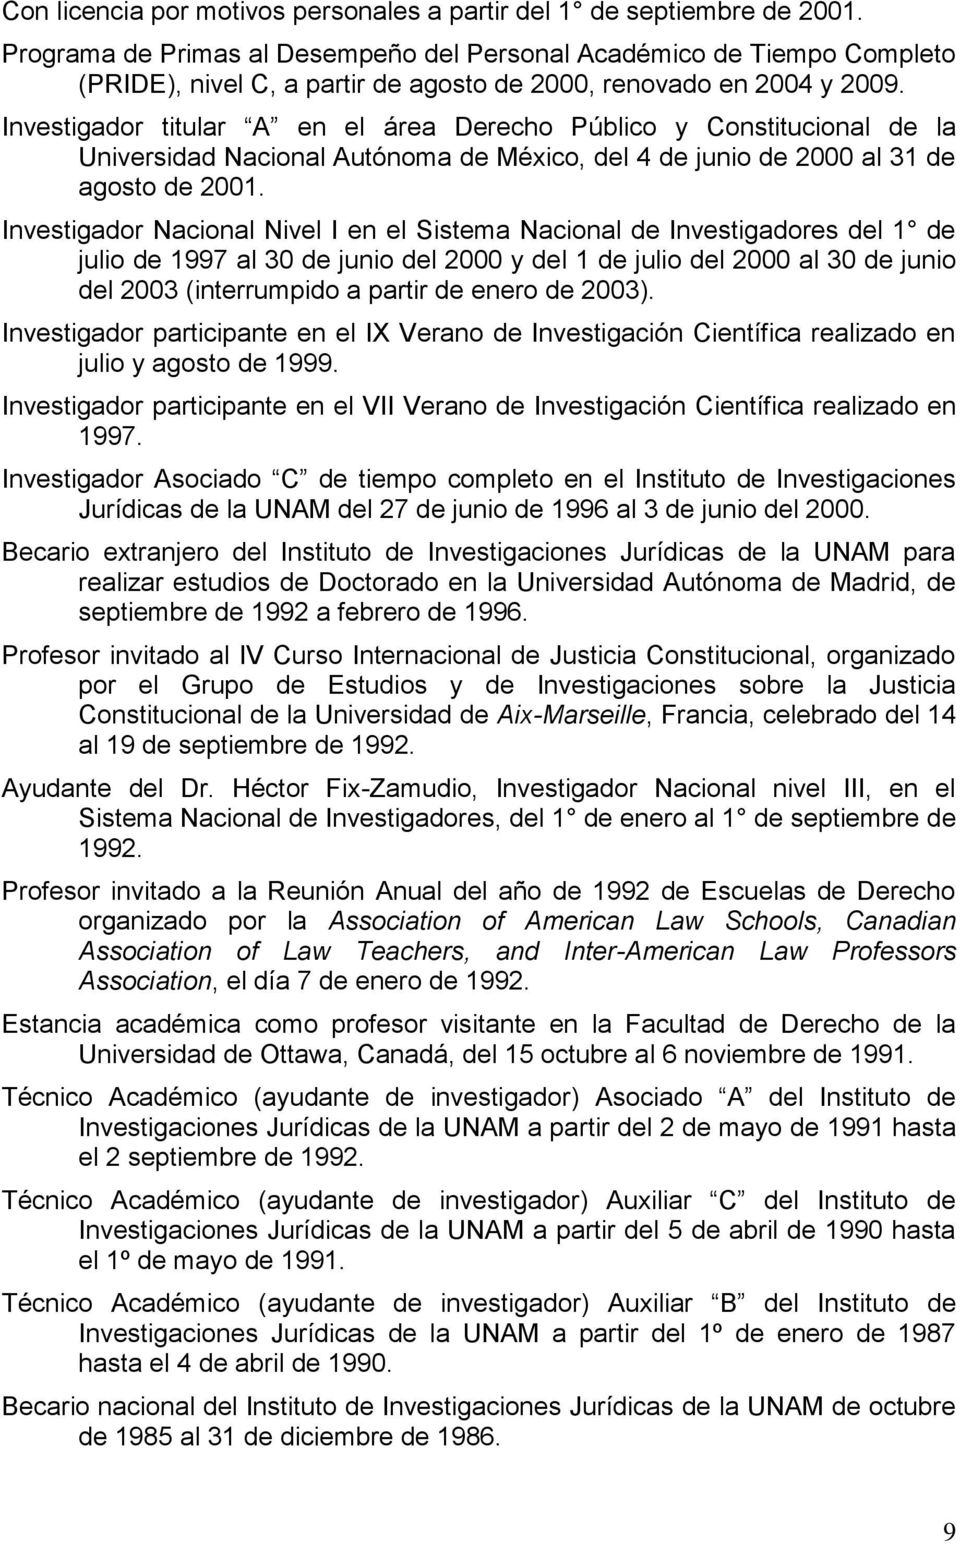 Investigador titular A en el área Derecho Público y Constitucional de la Universidad Nacional Autónoma de México, del 4 de junio de 2000 al 31 de agosto de 2001.